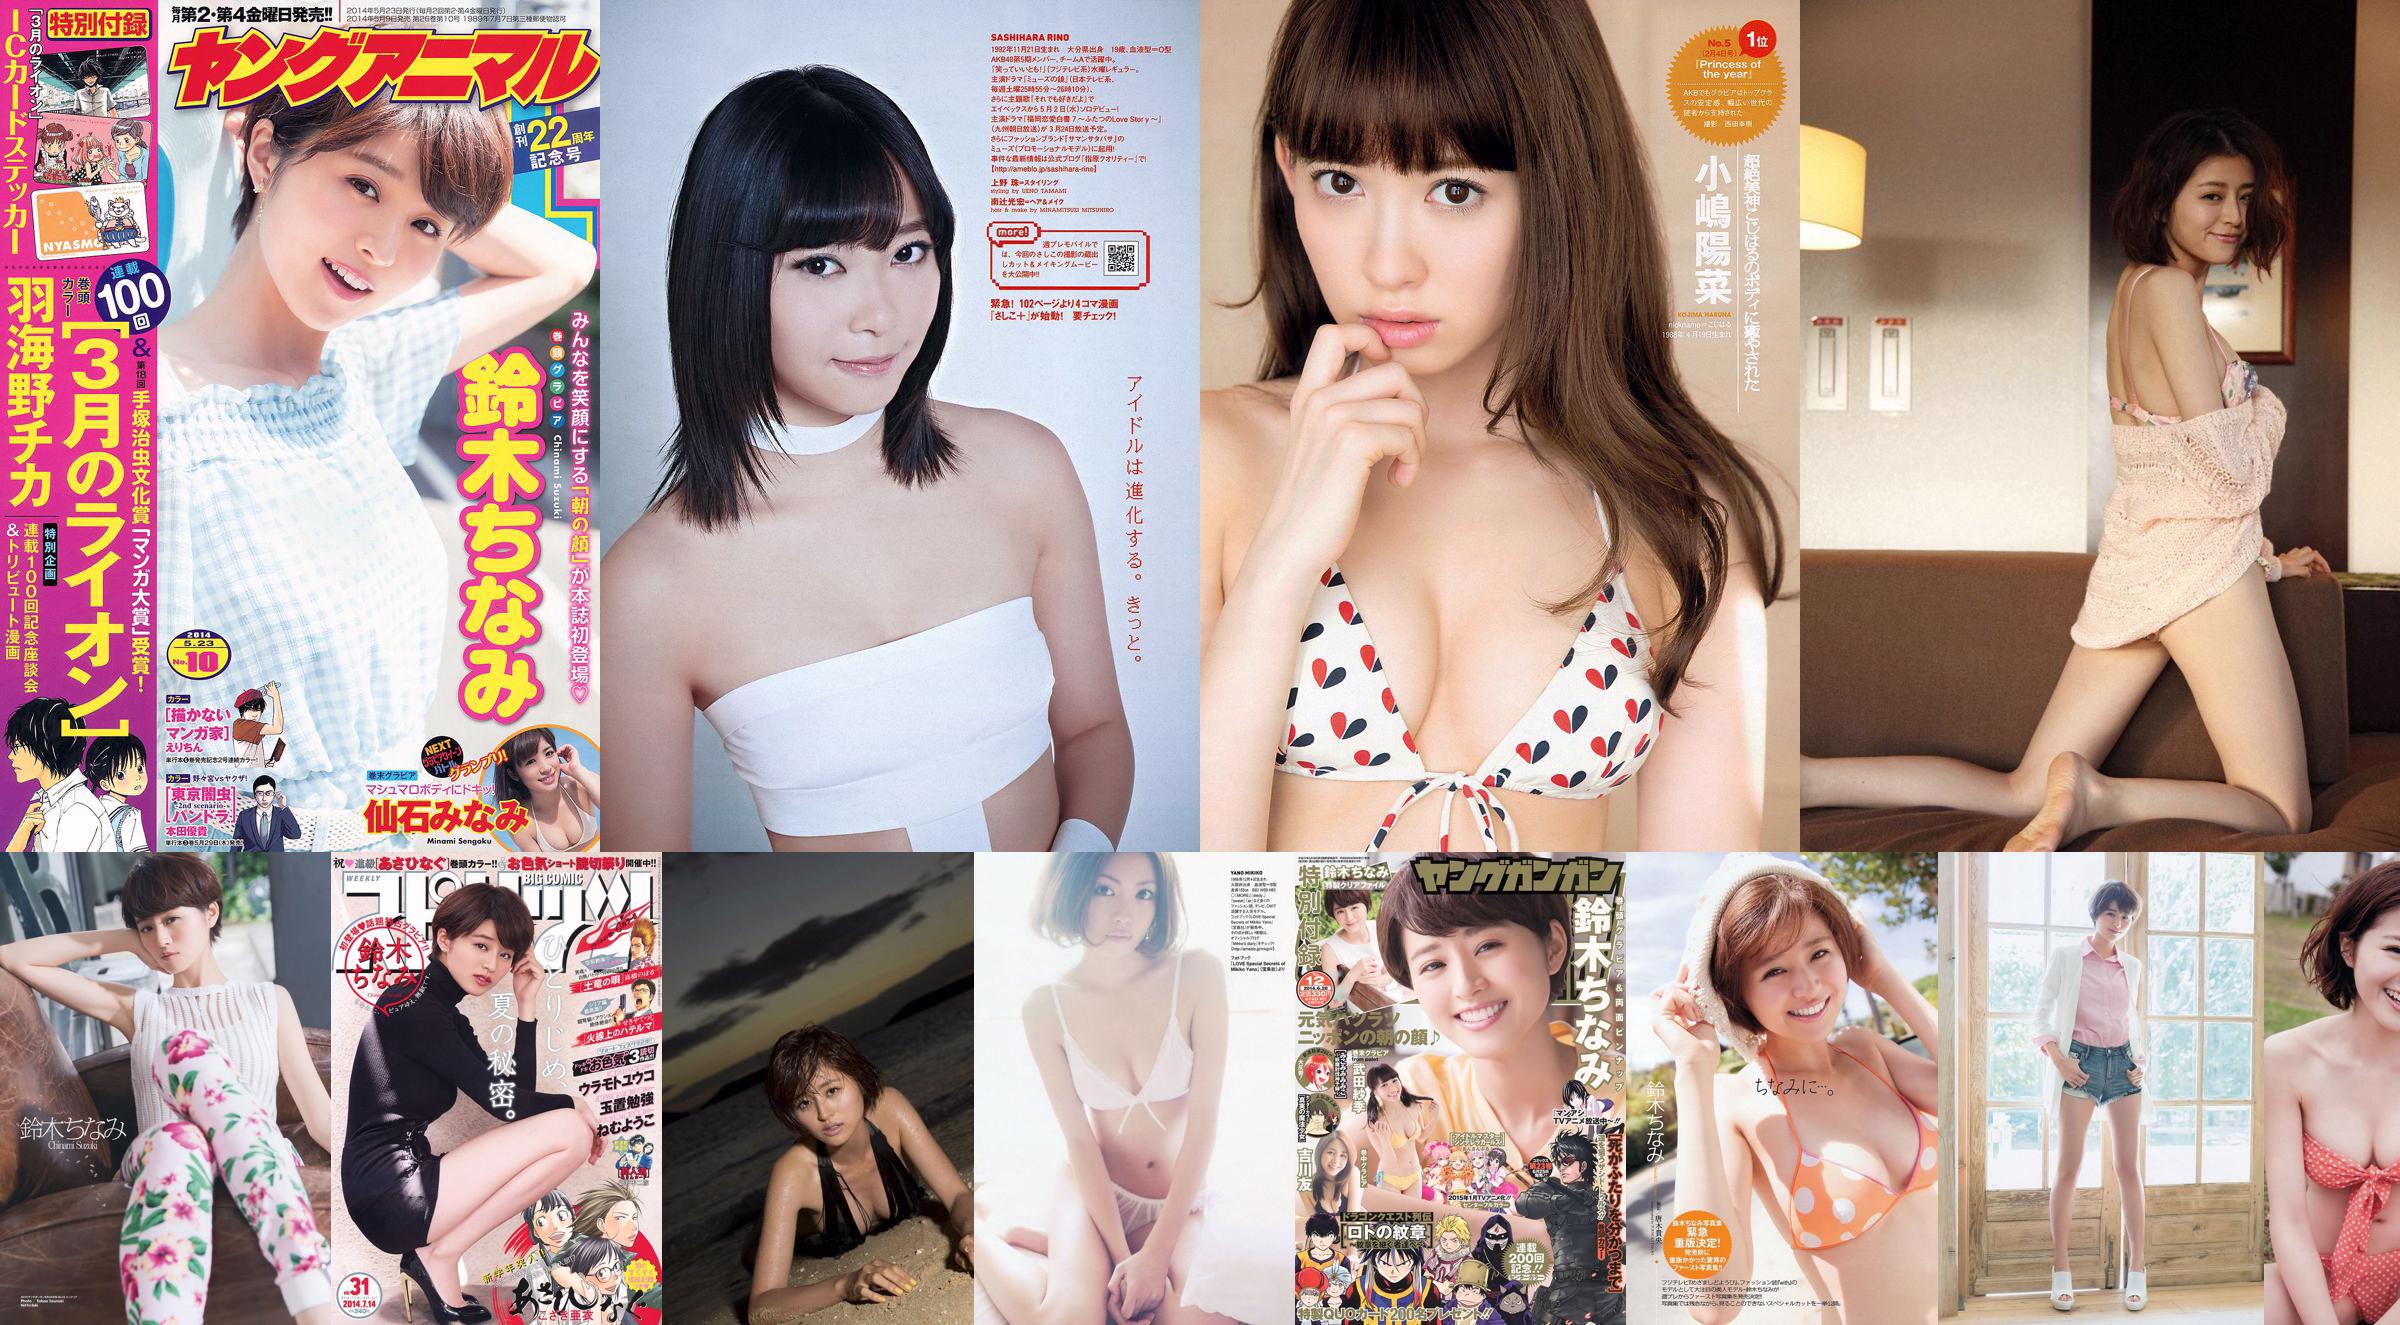 Chinami Suzuki Rina Sawayama Rino Sashihara Atsuko Maeda Nako Mizusawa Alisa [Weekly Playboy] 2012 No.12 Photographie No.2c0091 Page 3